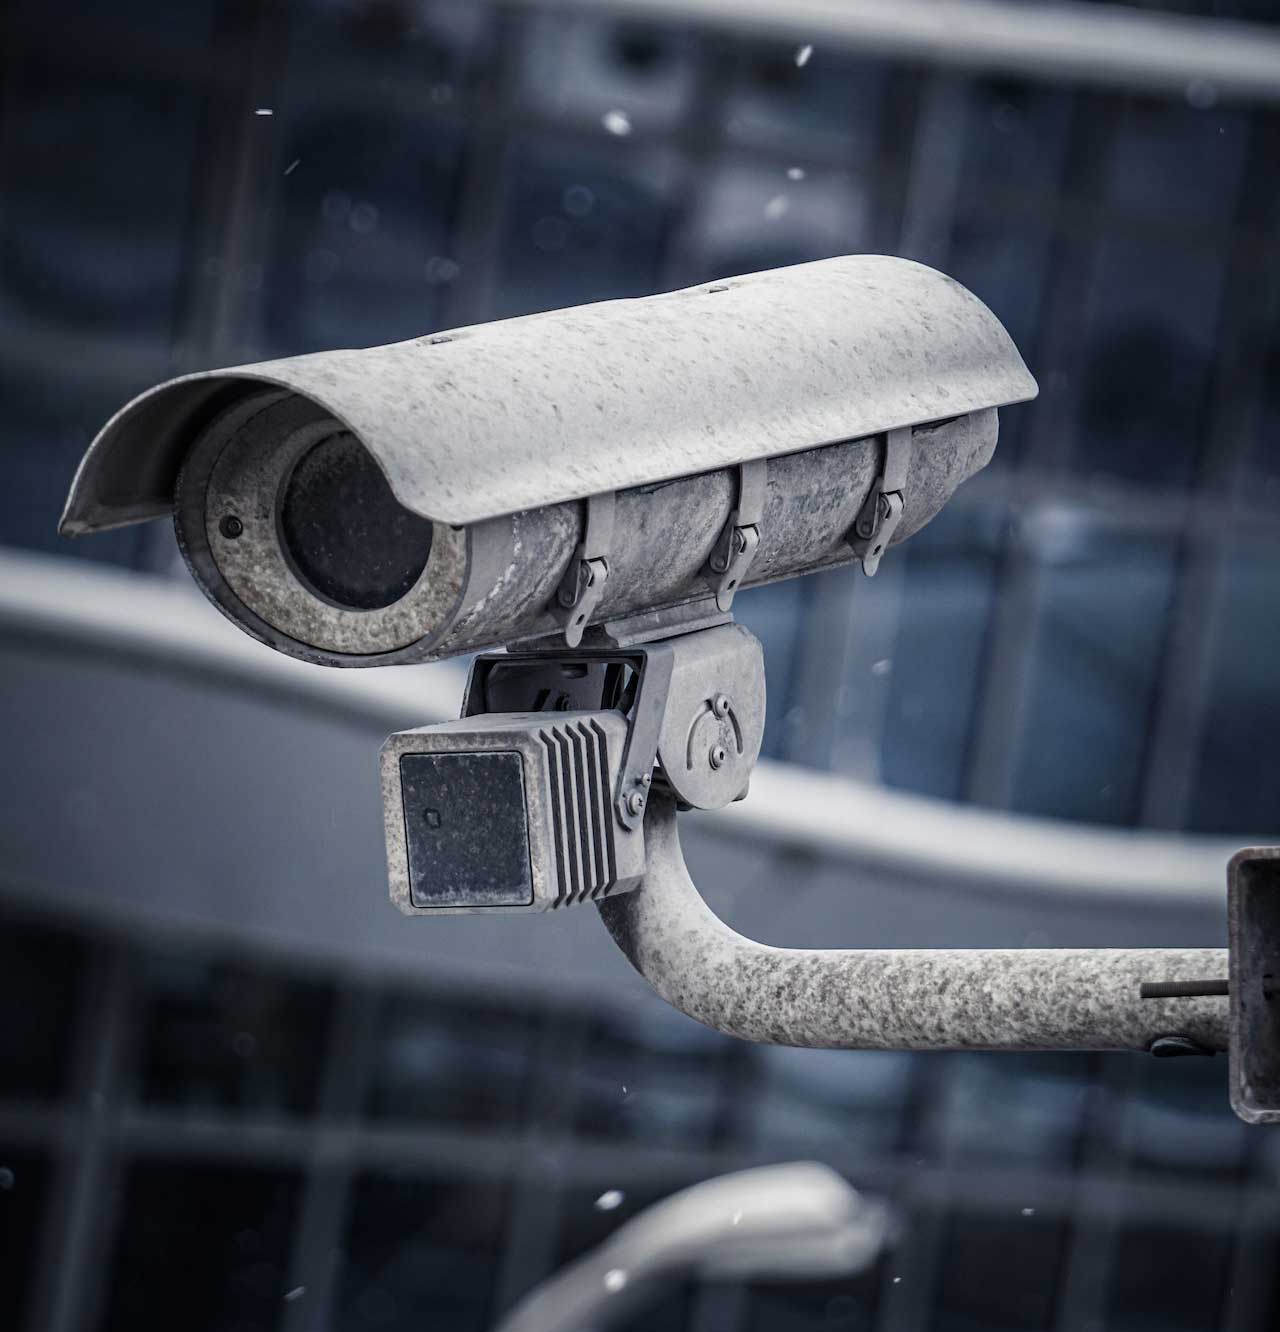 vidéo surveillance par caméra